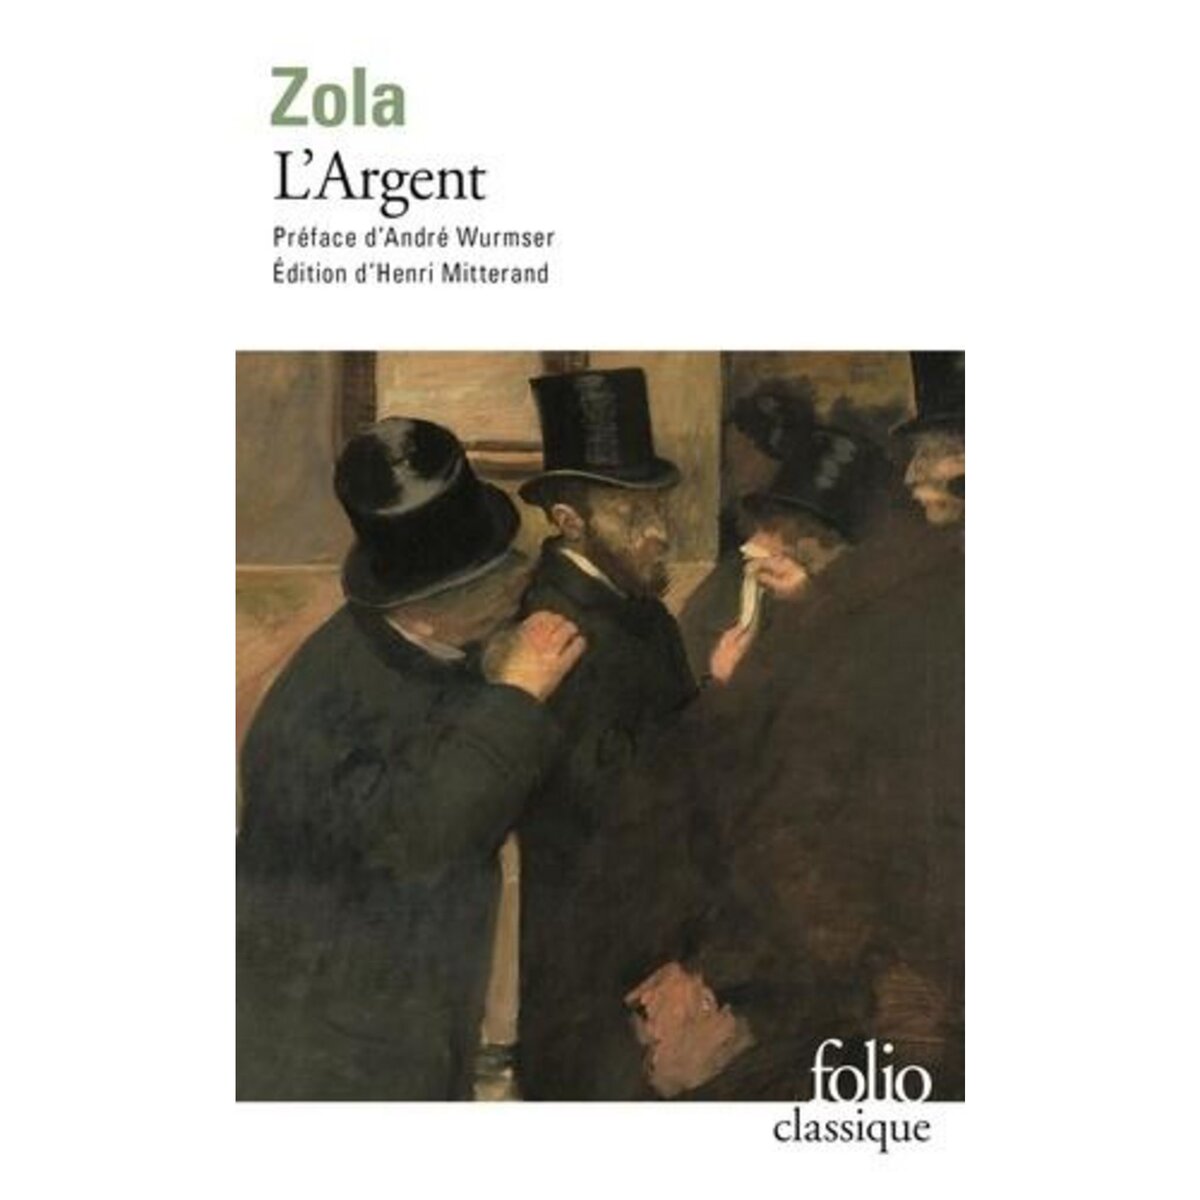  L'ARGENT, Zola Emile